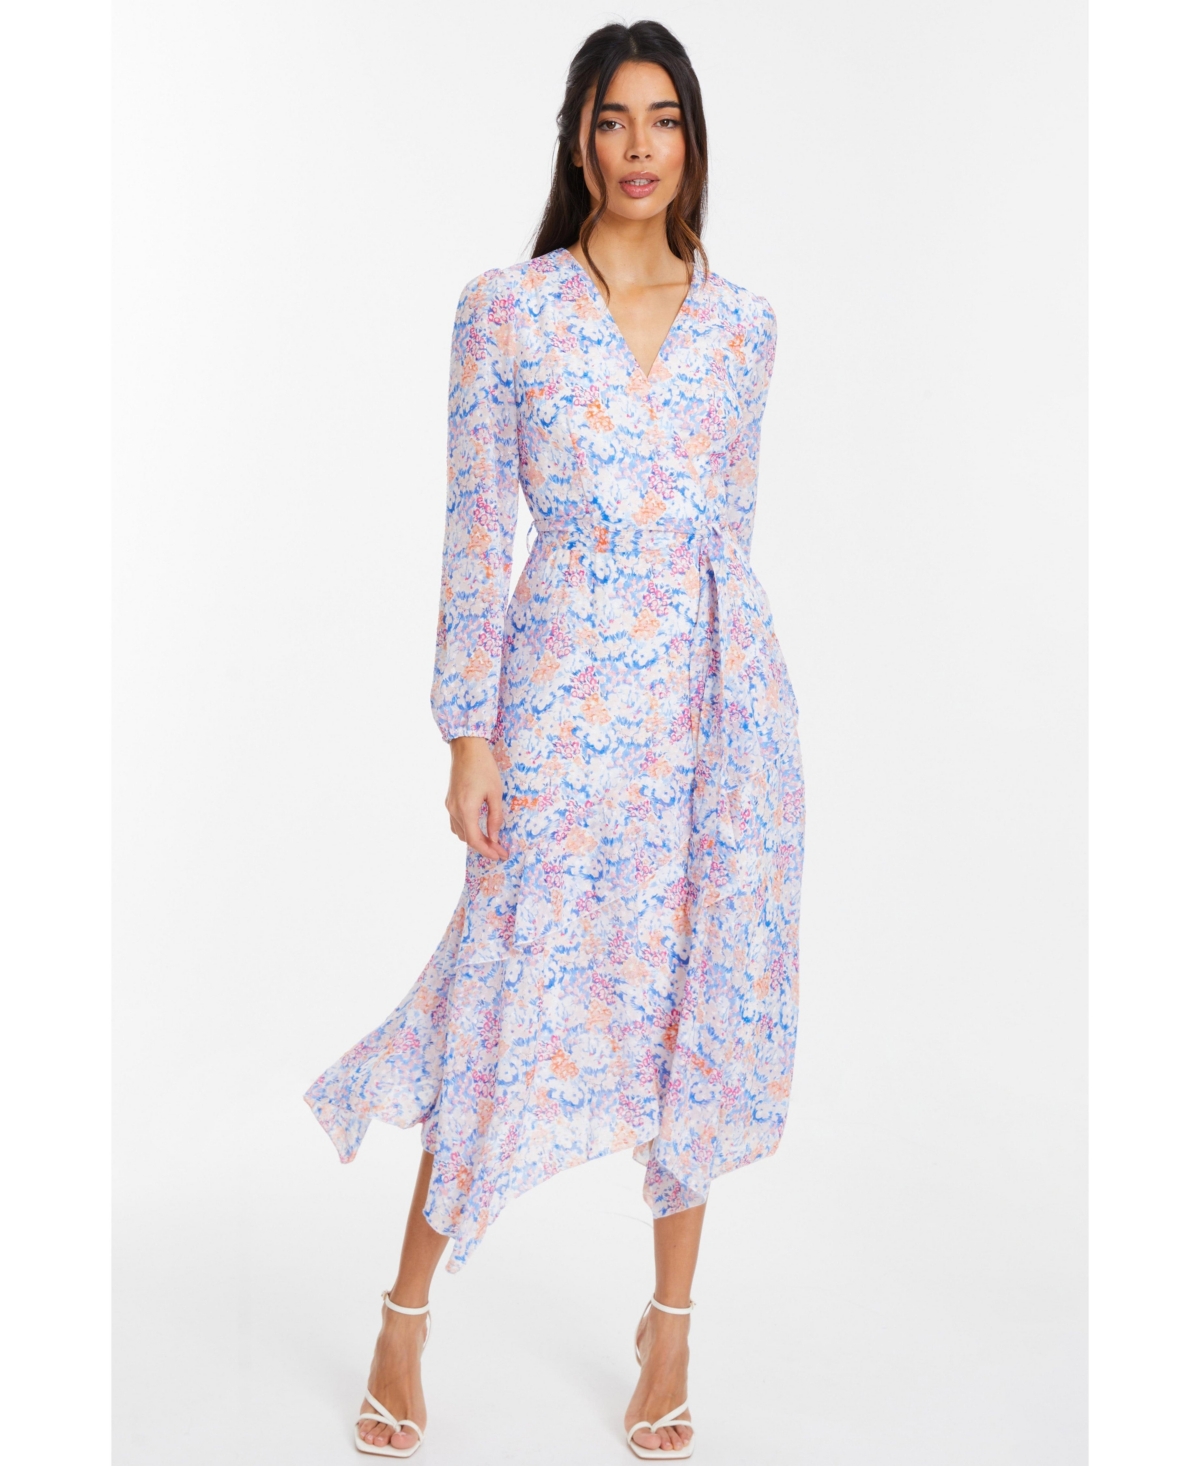 Women's Chiffon Jacquard Wrap Long Sleeve Maxi Dress - Multi